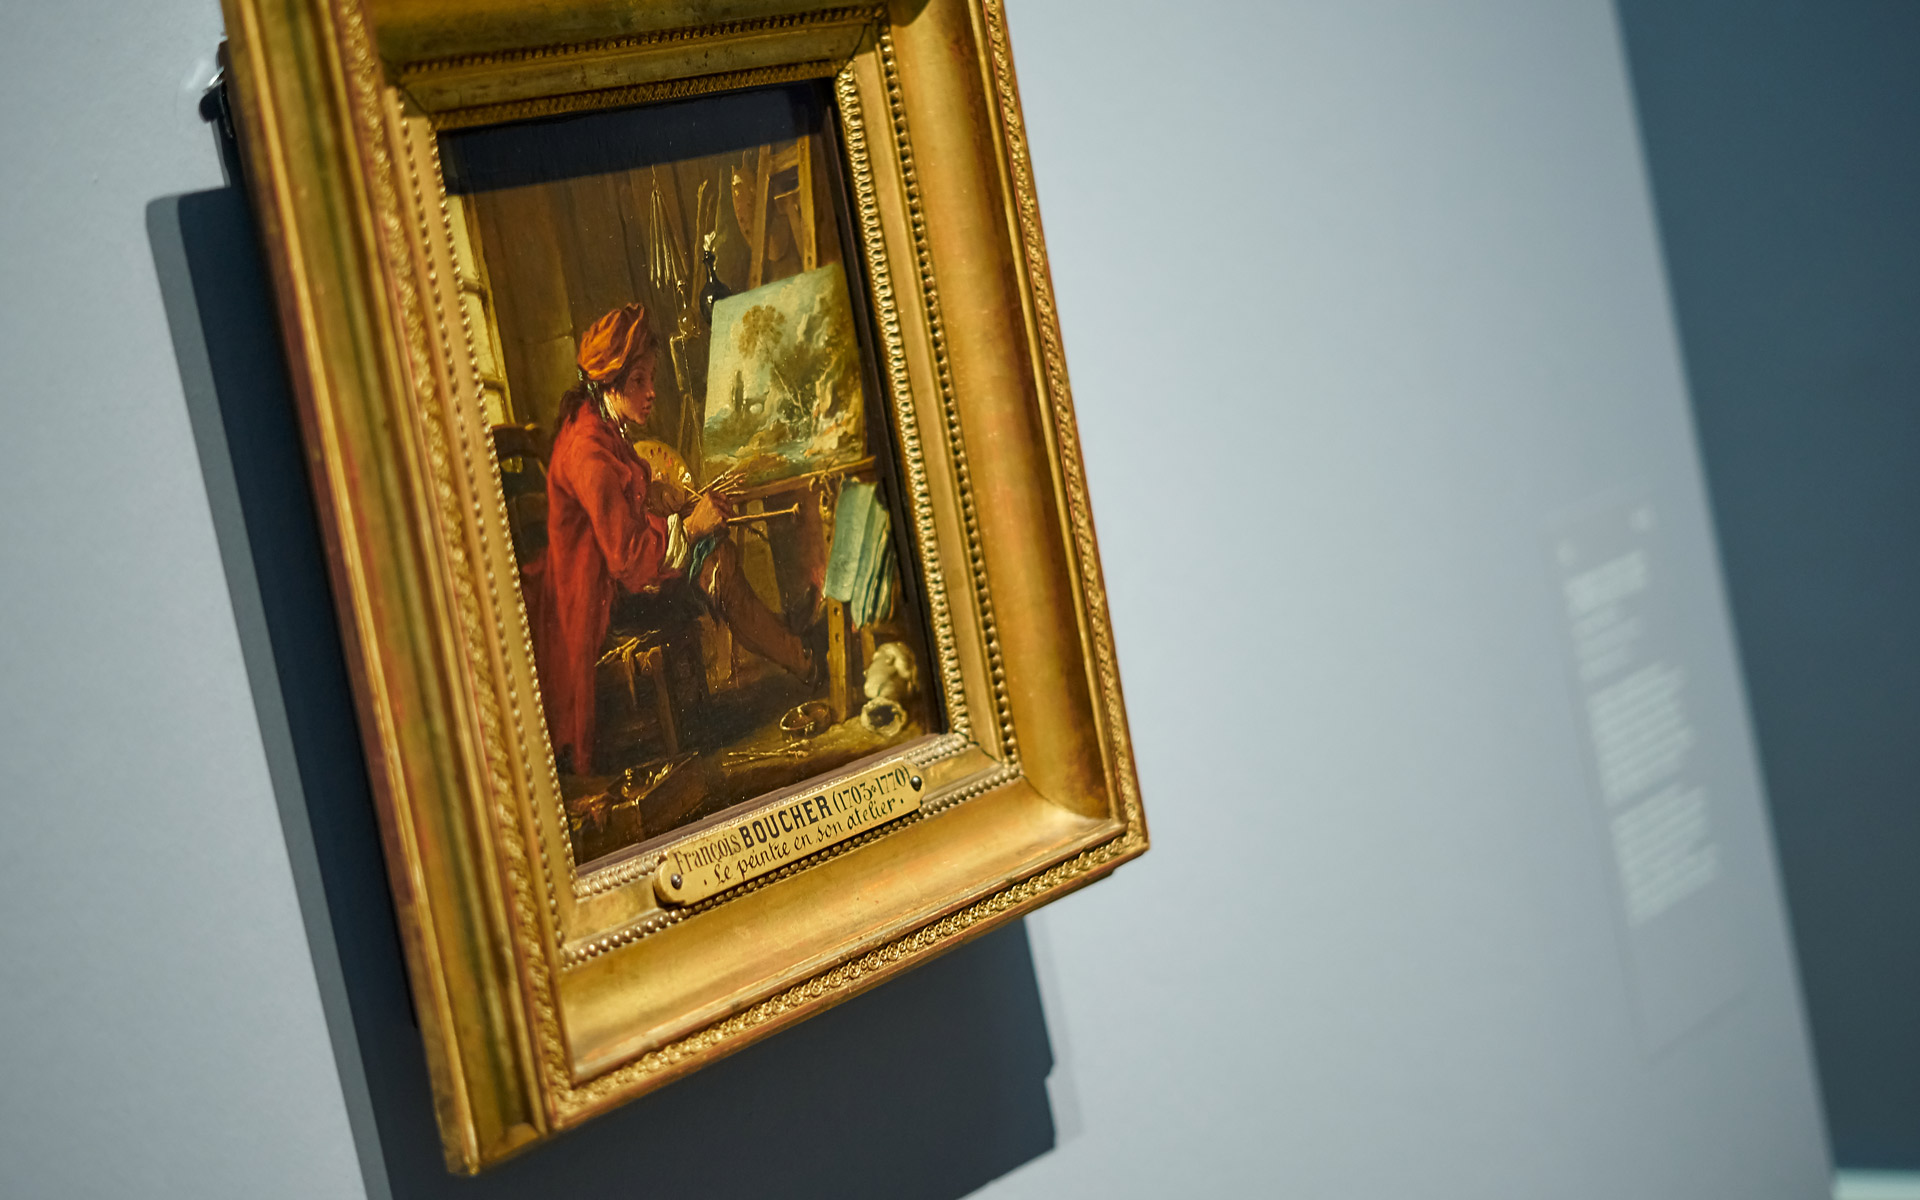 Gemälde Der Maler in seinem Atelier in der Ausstellung François Boucher der Kunsthalle Karlsruhe. Zu sehen ist das Werk an der Wand hängend. Es ist in einem Goldrahmen.